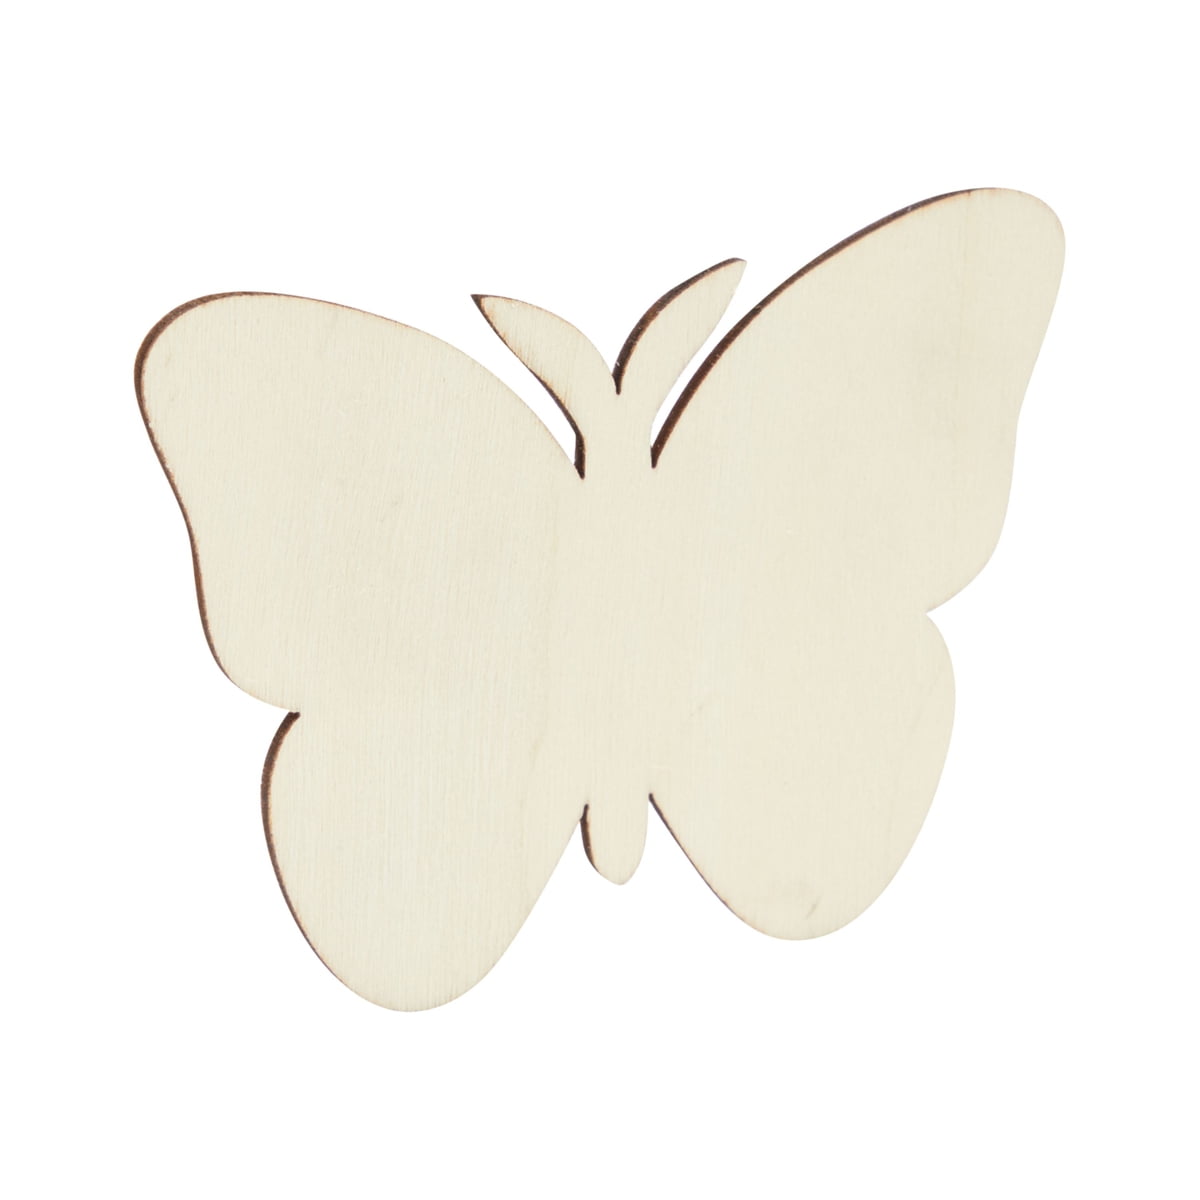 Wooden Gift Tags Butterflies Bulk Buy x 40 